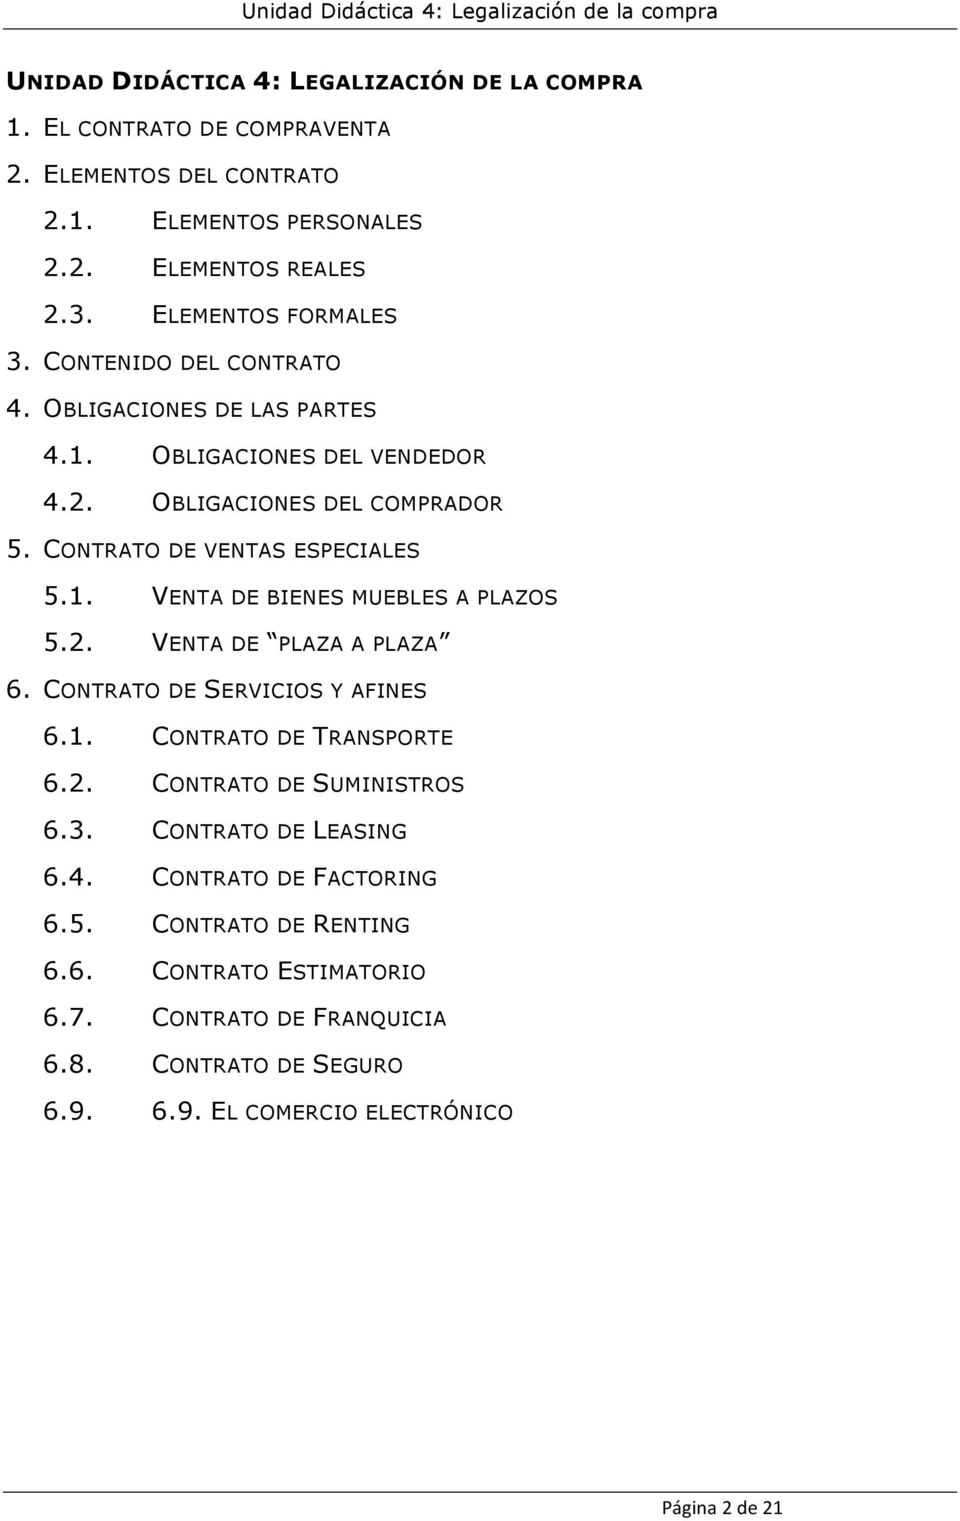 CONTRATO DE VENTAS ESPECIALES 5.1. VENTA DE BIENES MUEBLES A PLAZOS 5.2. VENTA DE PLAZA A PLAZA 6. CONTRATO DE SERVICIOS Y AFINES 6.1. CONTRATO DE TRANSPORTE 6.2. CONTRATO DE SUMINISTROS 6.